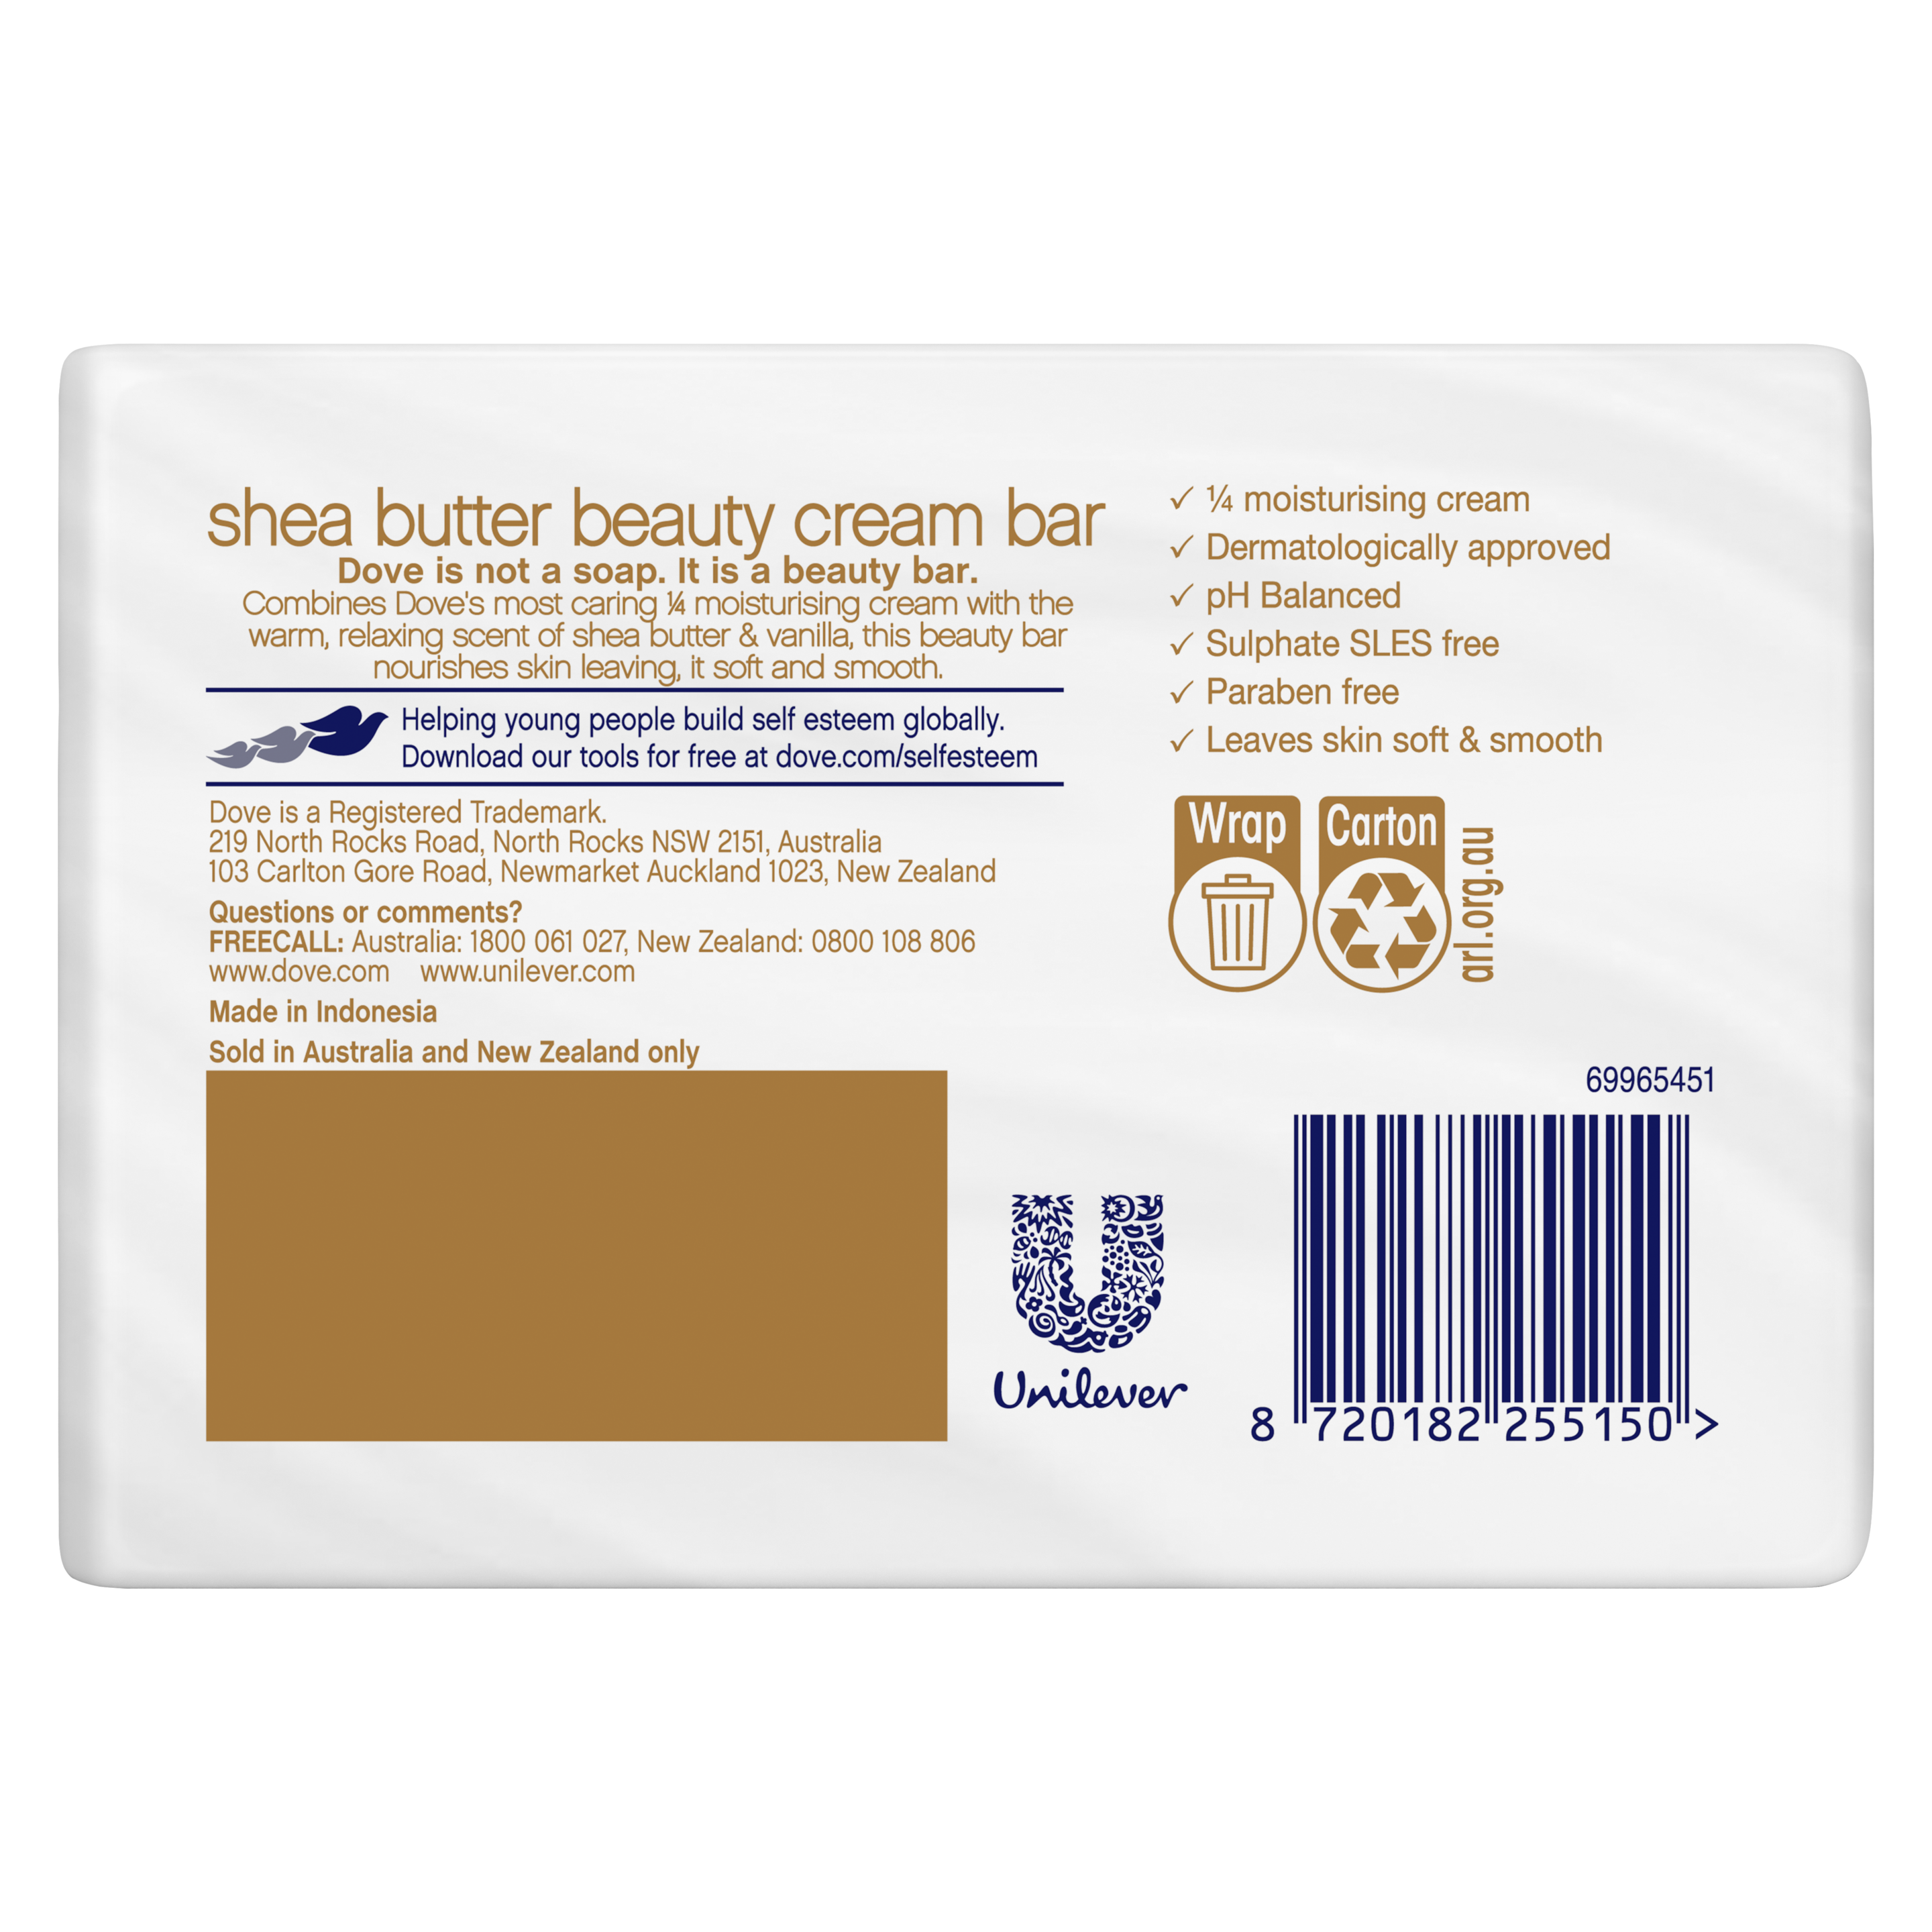 Shea Butter Beauty Cream Bar